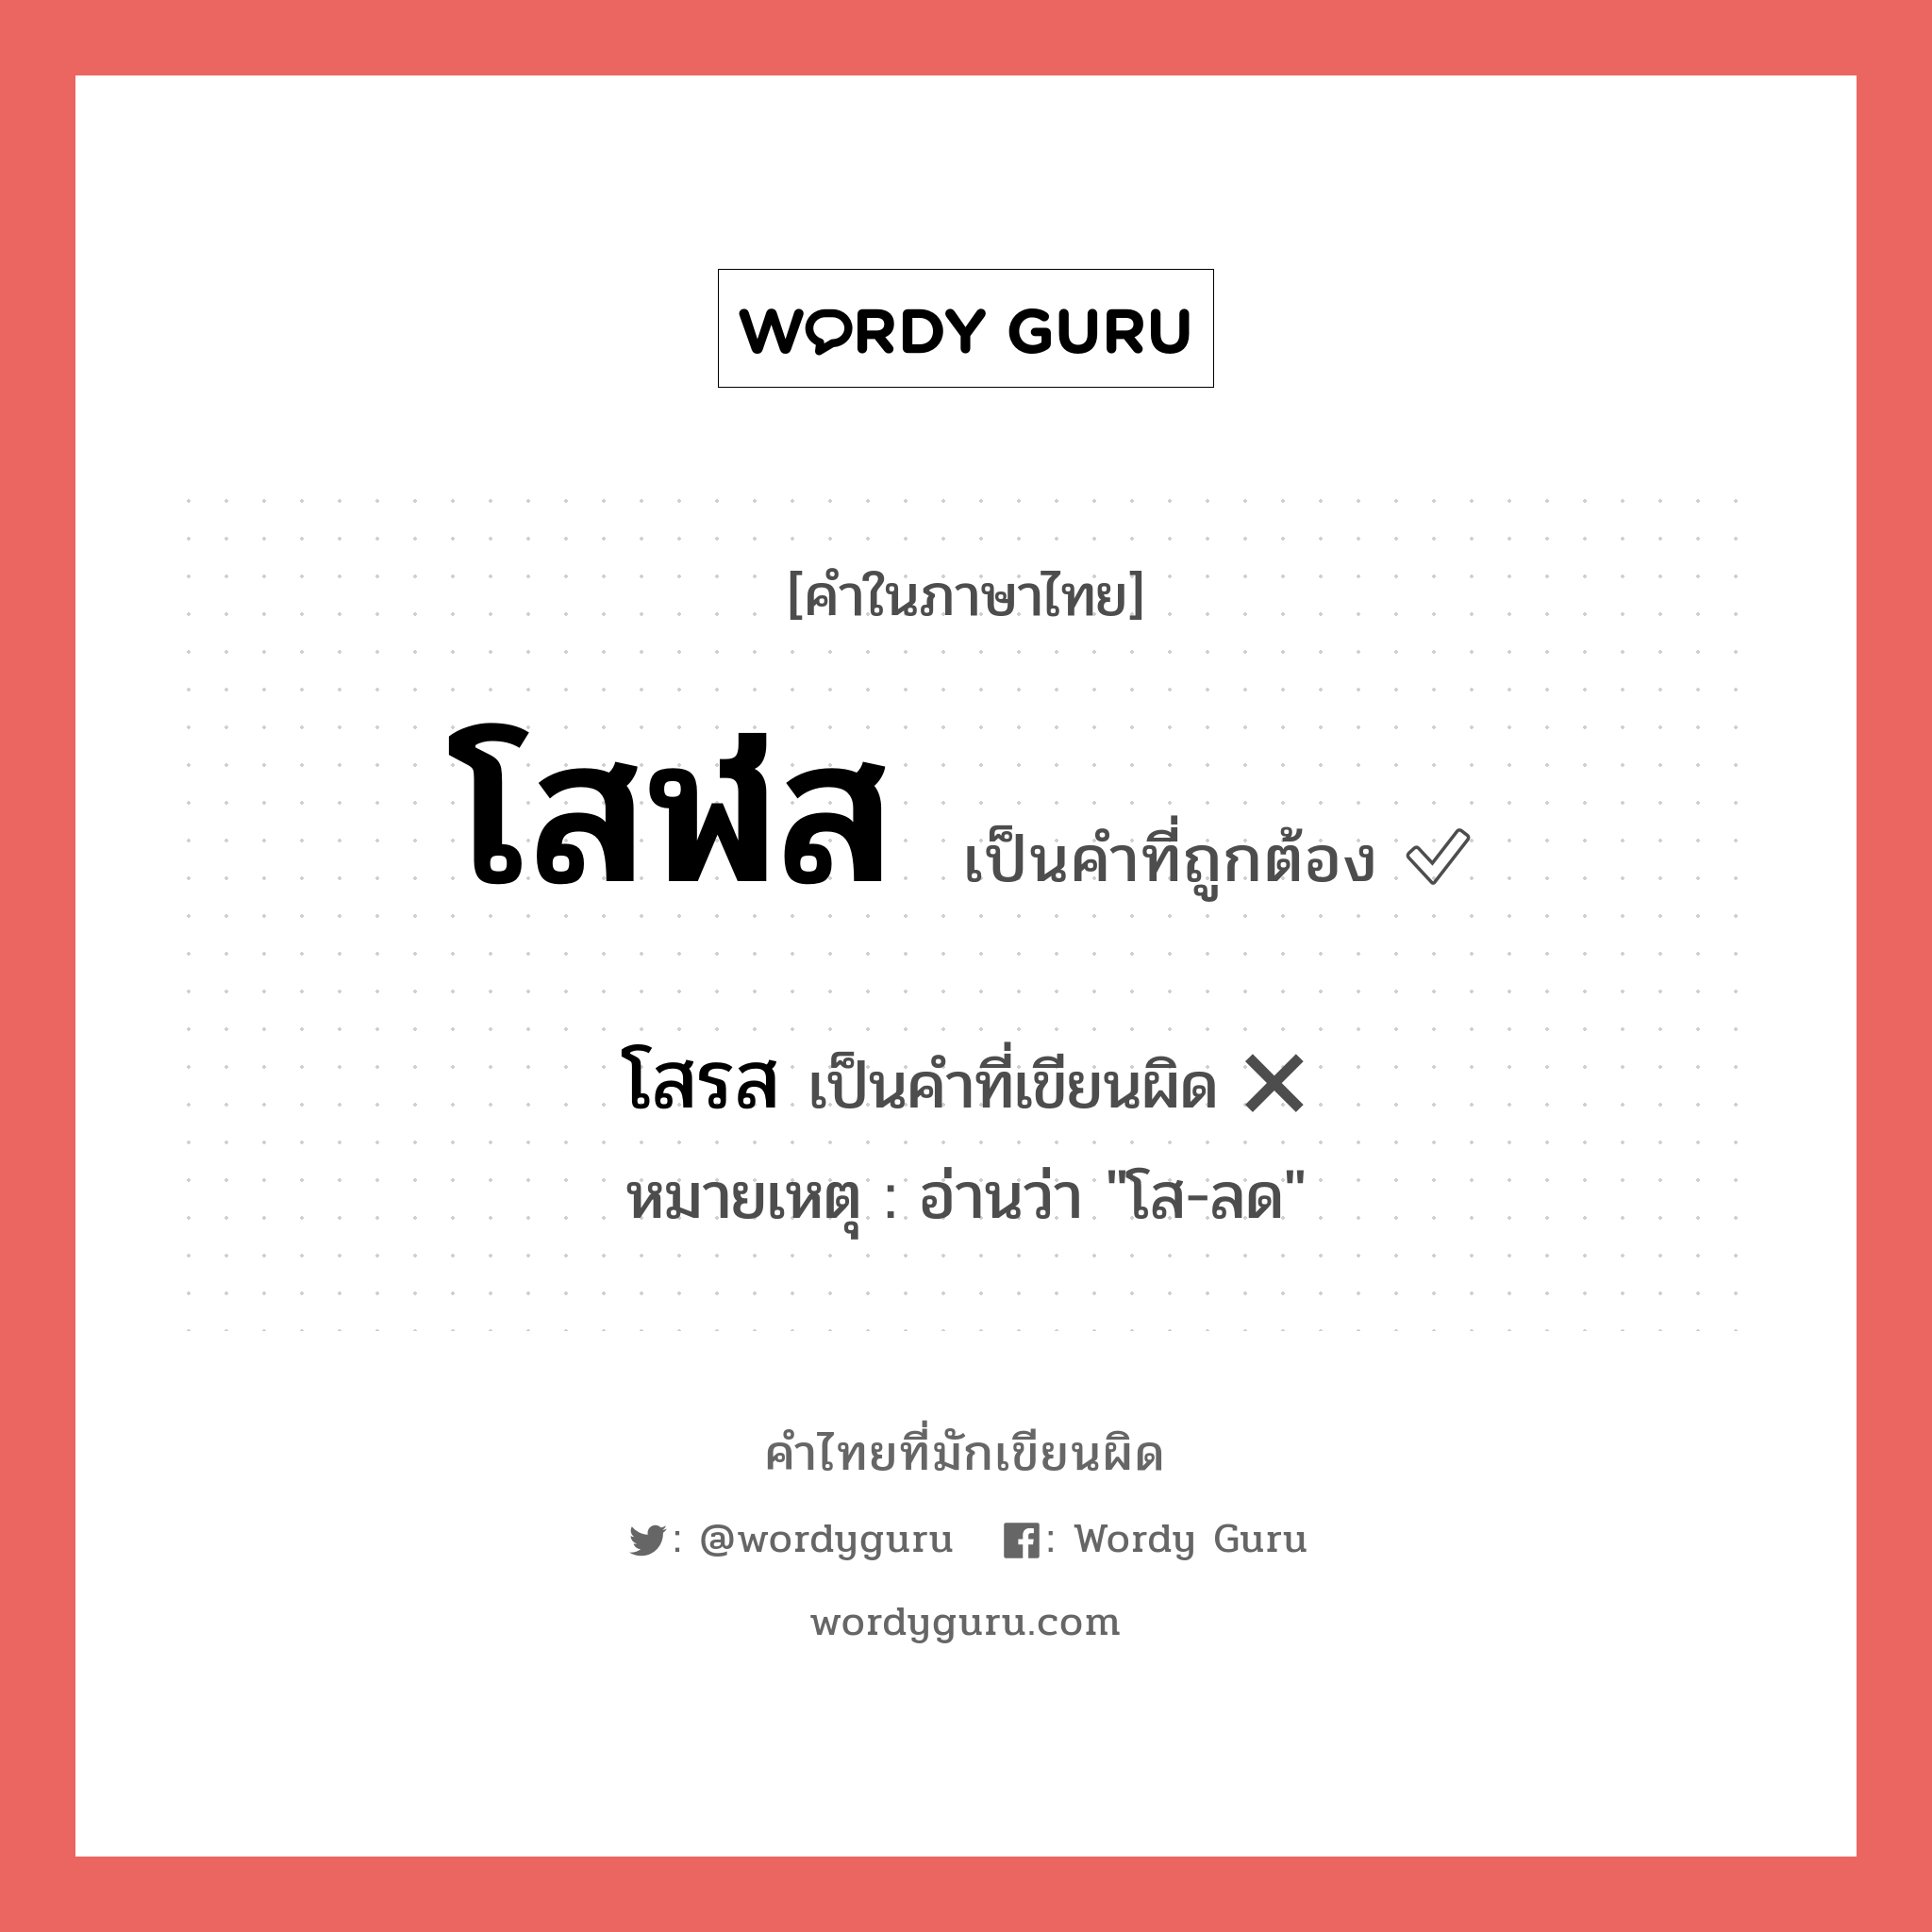 โสฬส หรือ โสรส เขียนยังไง? คำไหนเขียนถูก?, คำในภาษาไทยที่มักเขียนผิด โสฬส คำที่ผิด ❌ โสรส หมายเหตุ อ่านว่า "โส-ลด"